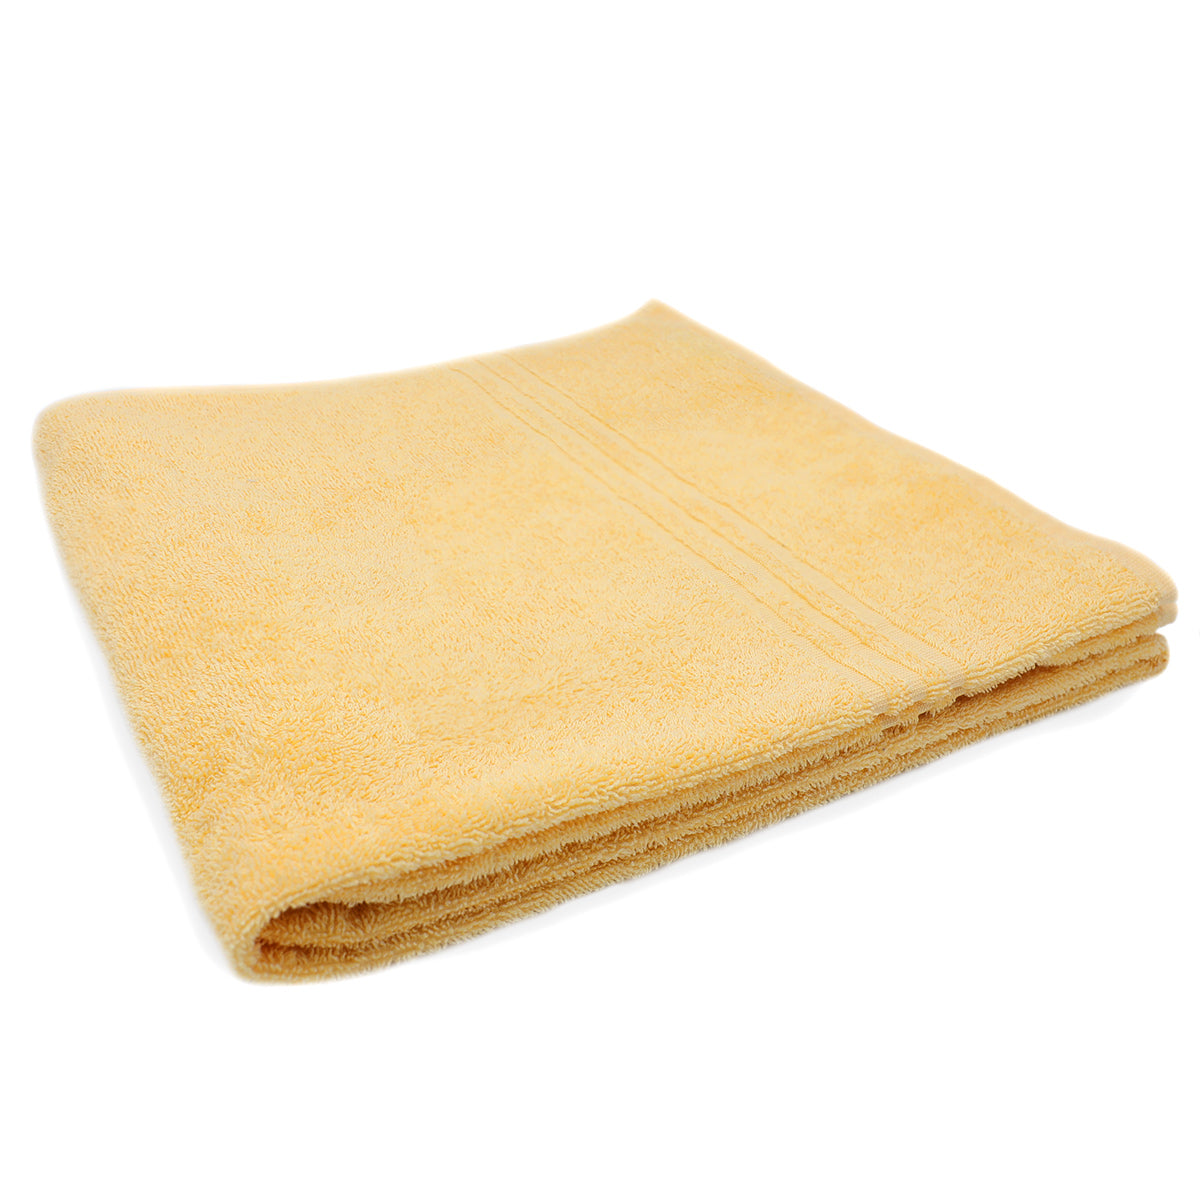 (10 stk.) Grønland badehåndklæde - 70 x 140 cm - gul